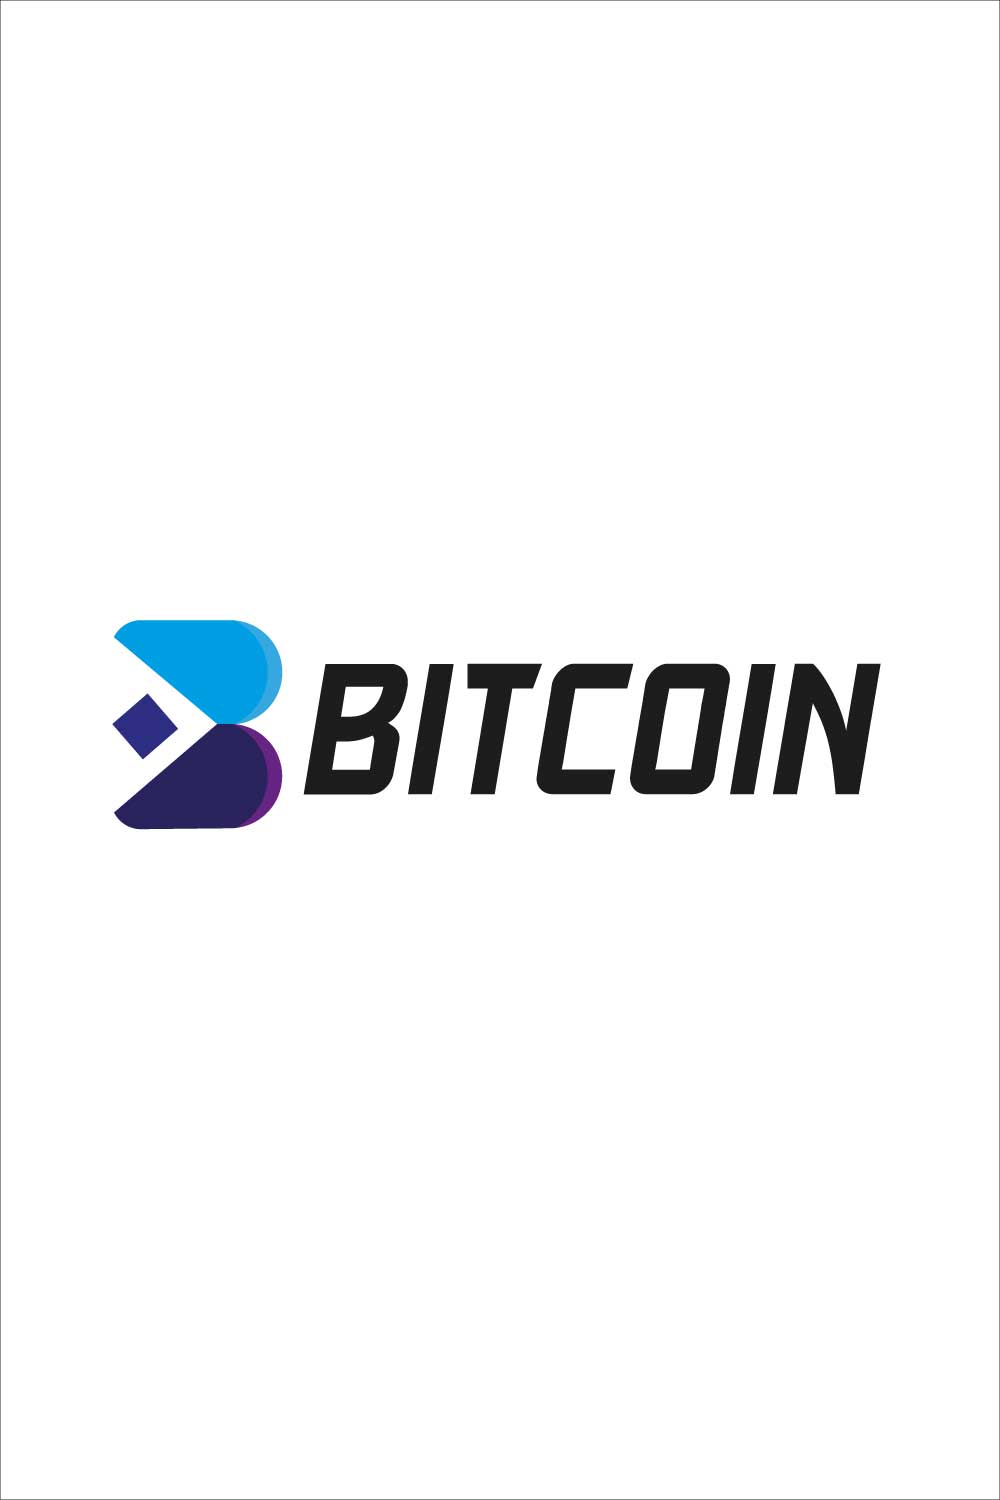 B logo Design | Bitcoin Logo Design pinterest preview image.